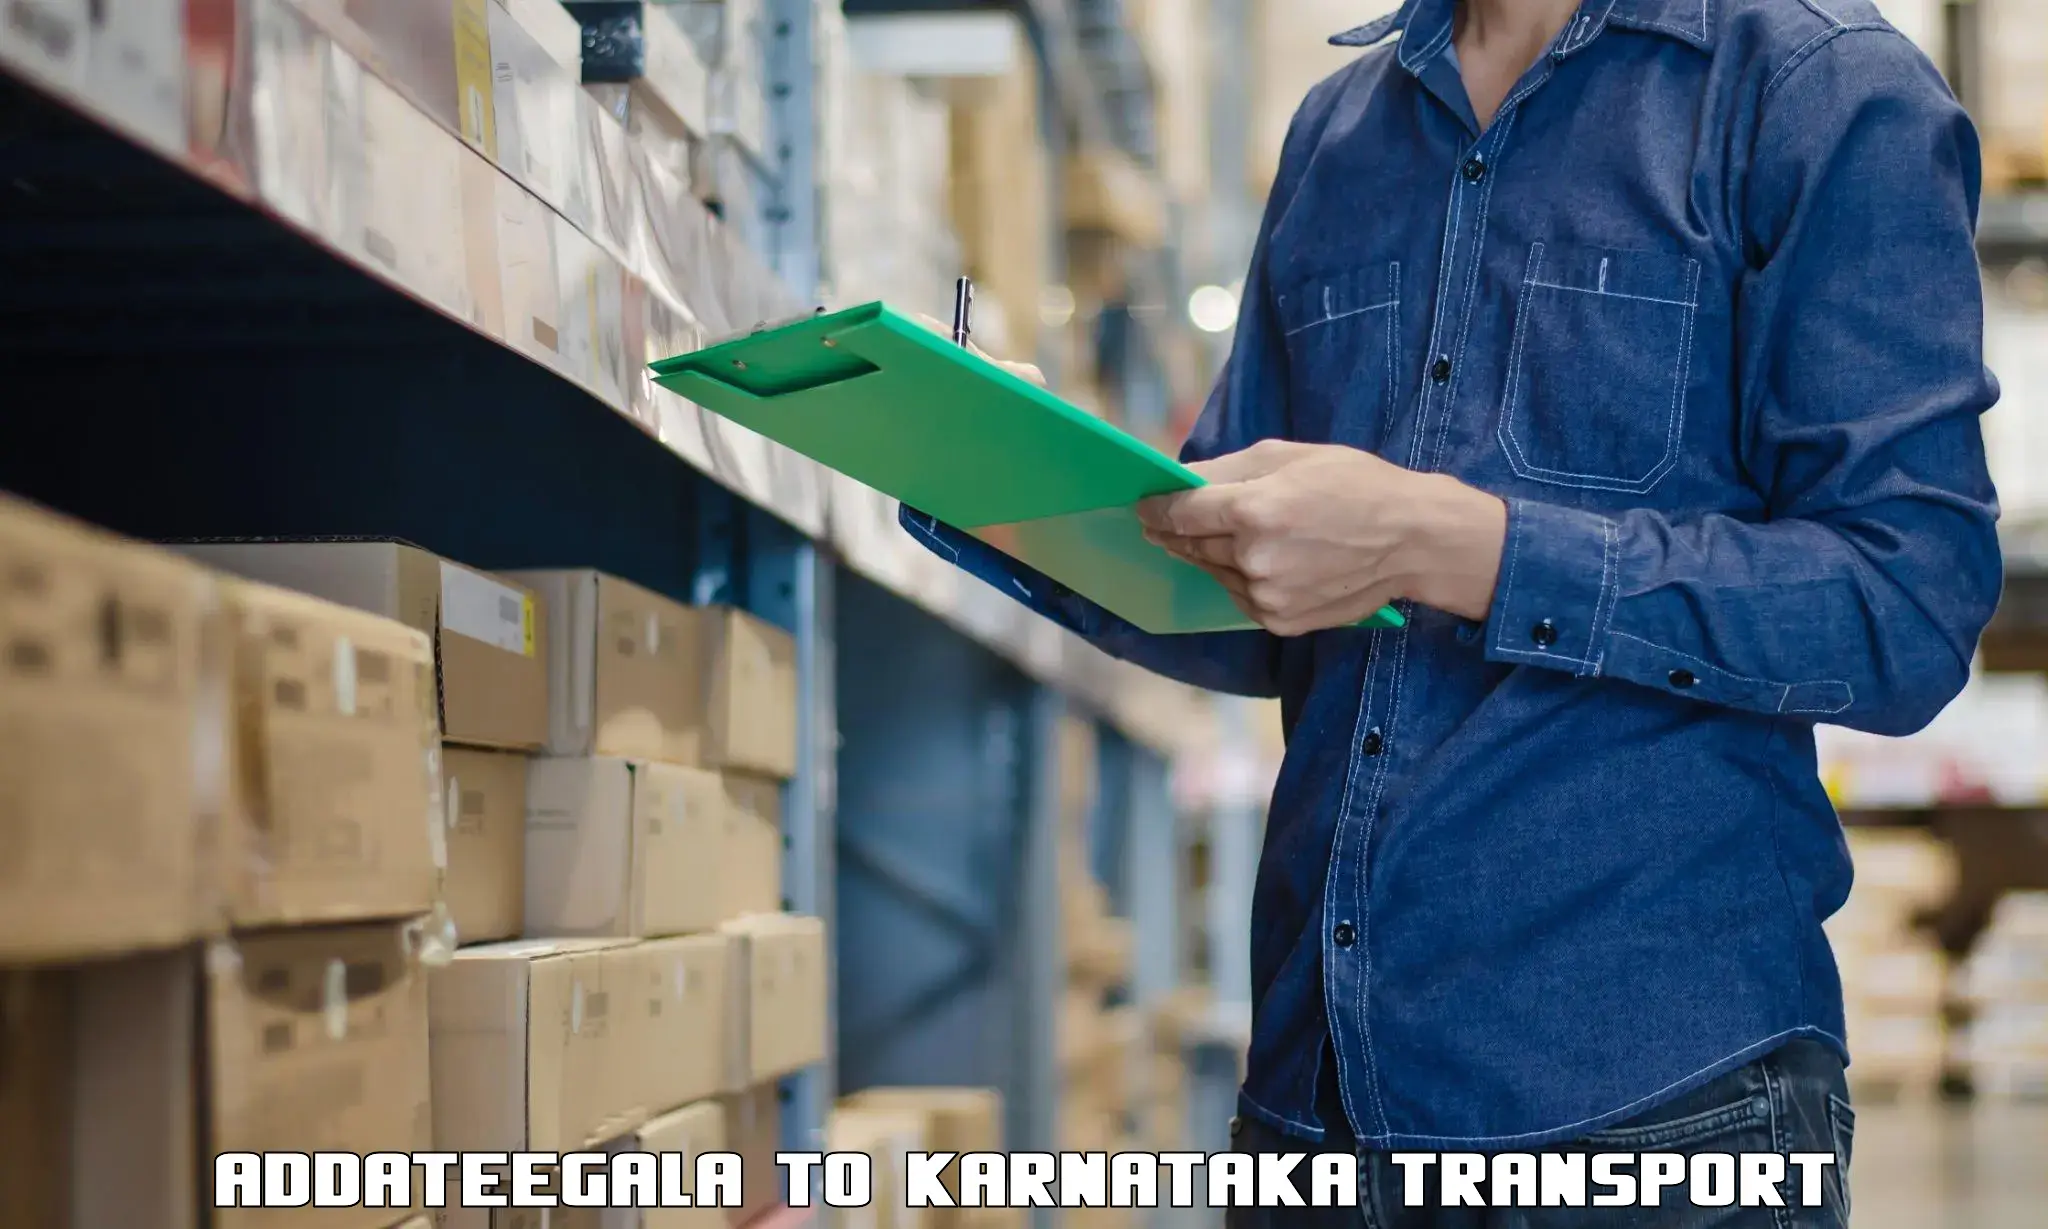 Shipping services Addateegala to Kanakapura